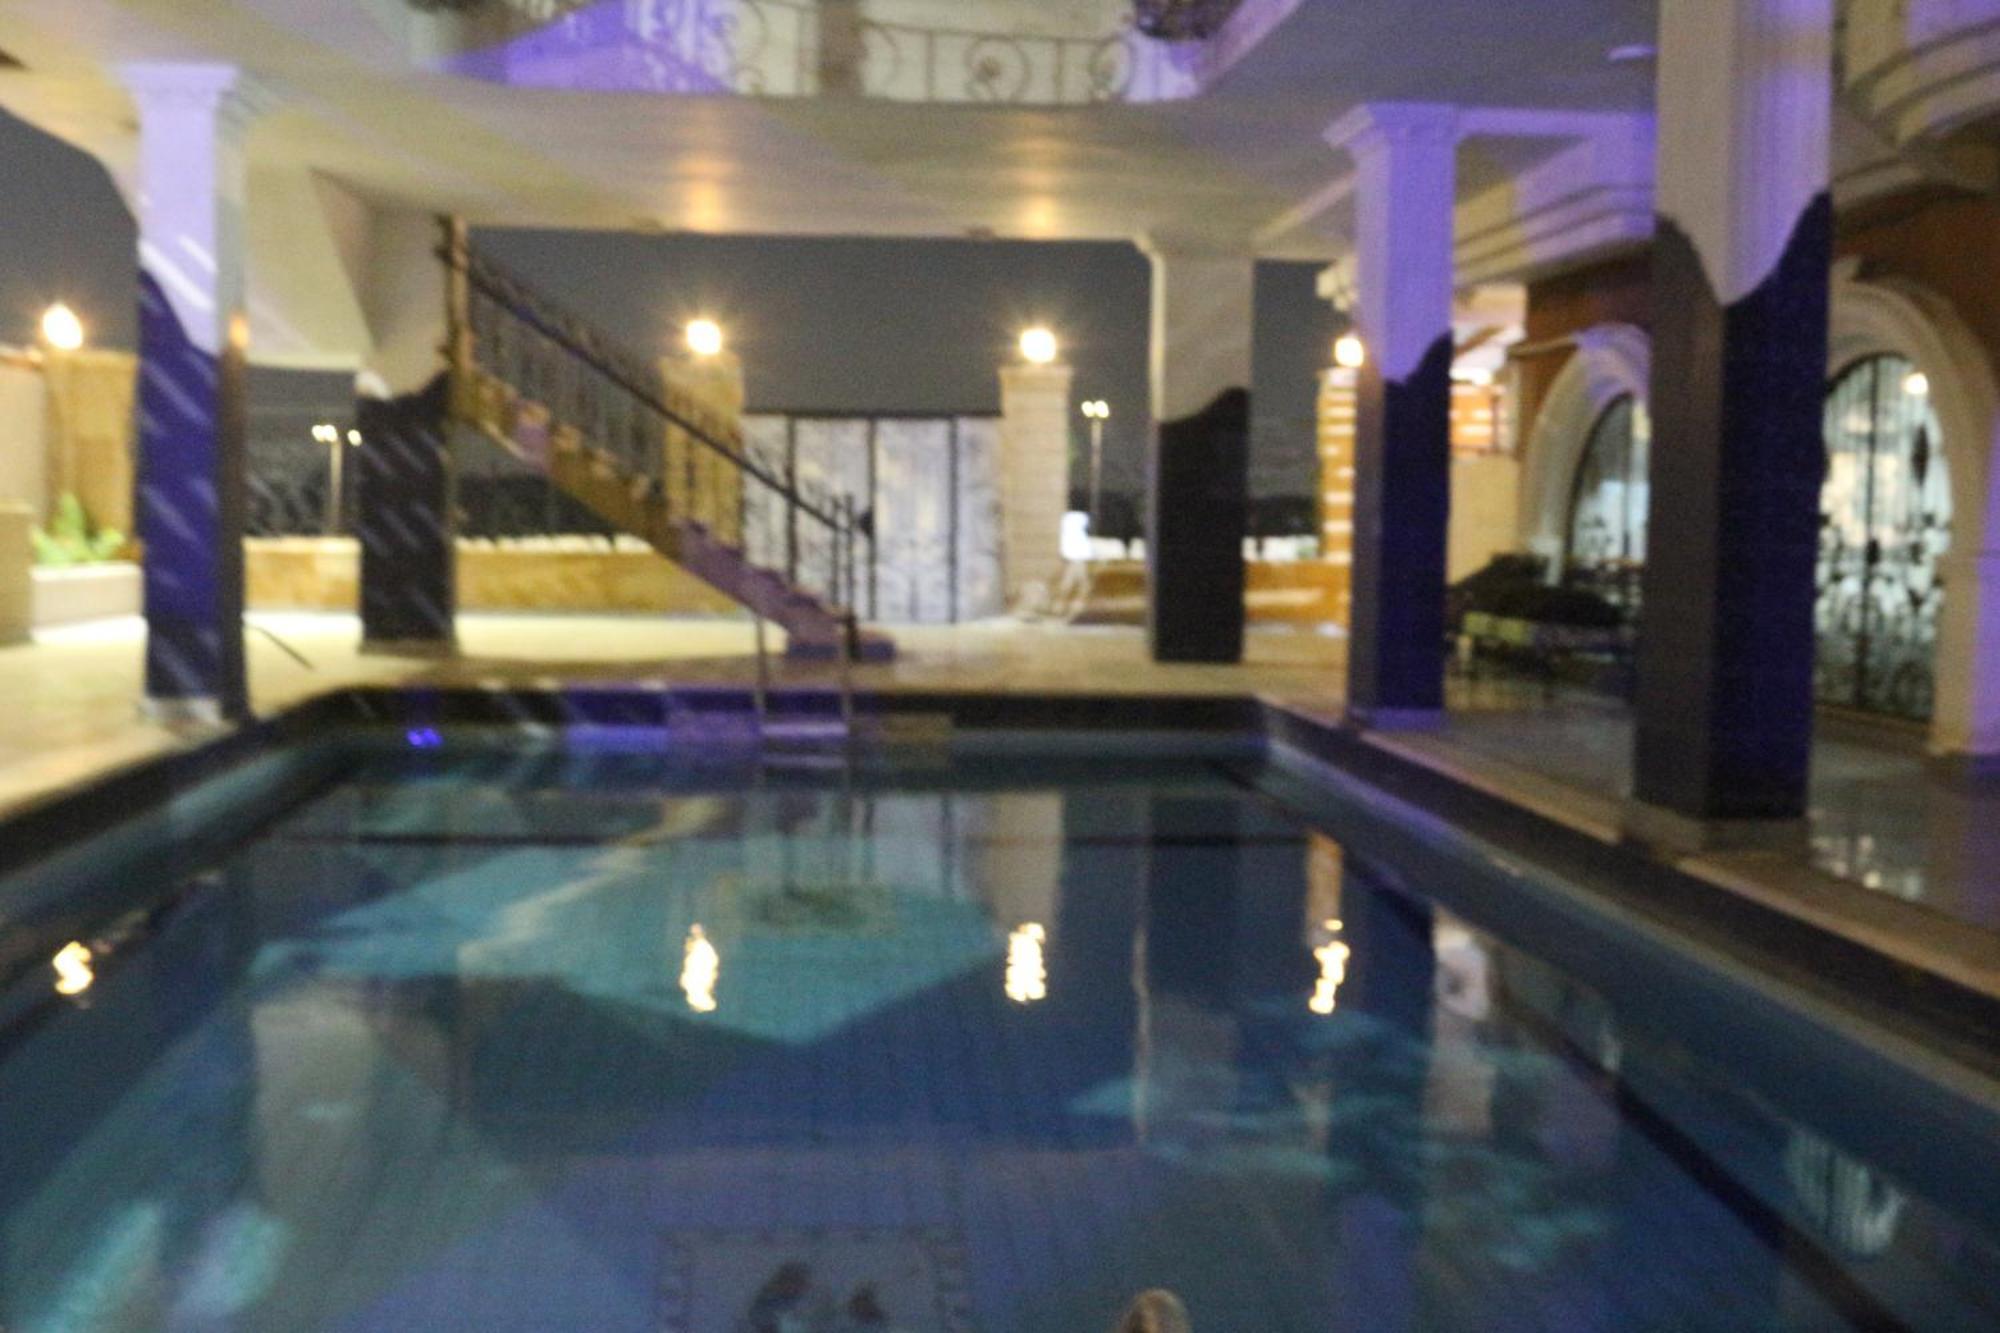 Pyramita Hotel 开罗 外观 照片